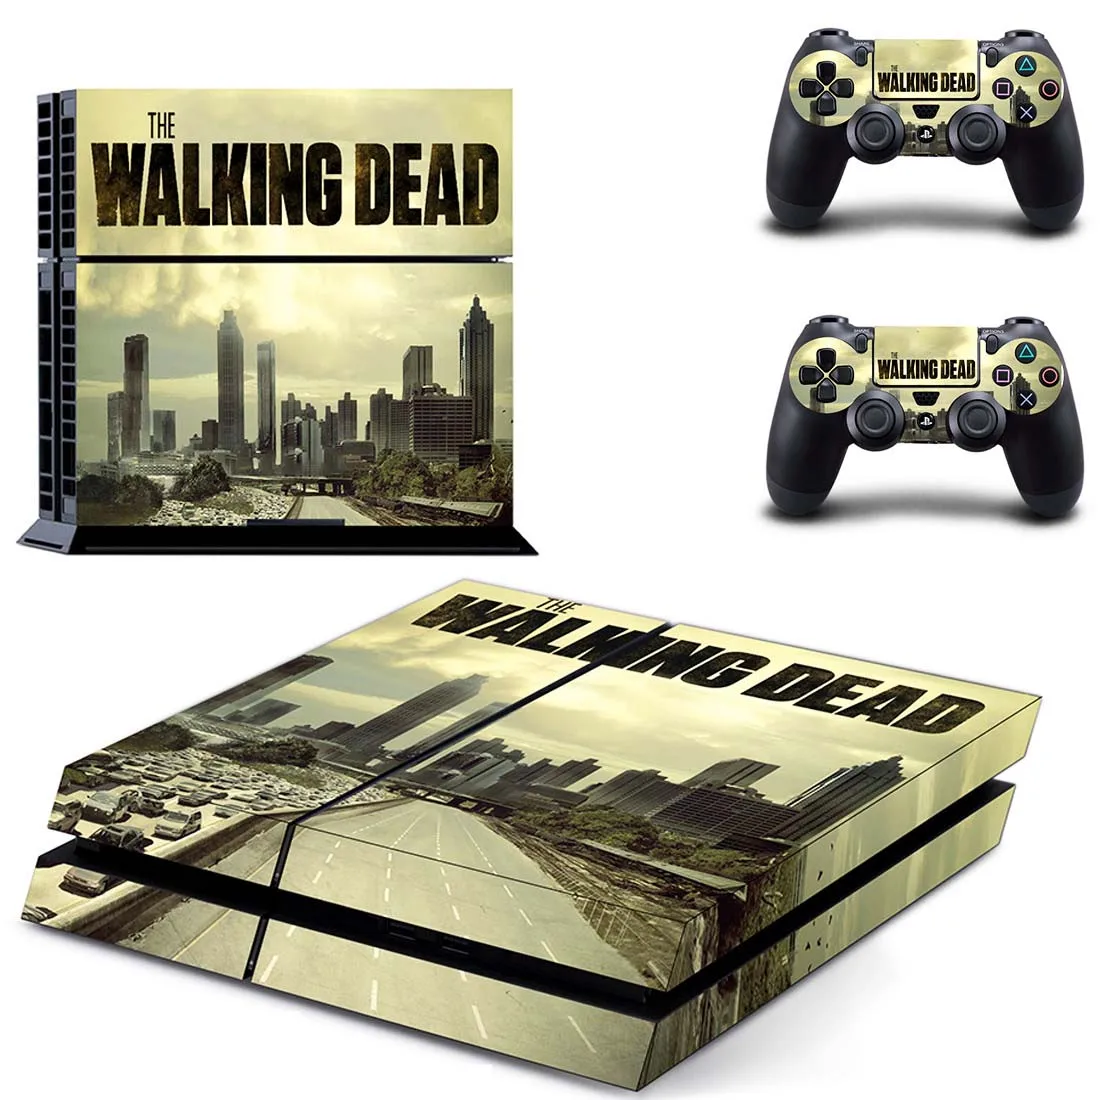 Наклейка s The Walking Dead наклейка для PS4 PS 4 наклейка Play station 4 наклейки виниловые Pegatinas для консоли playstation 4 и 2 контроллера